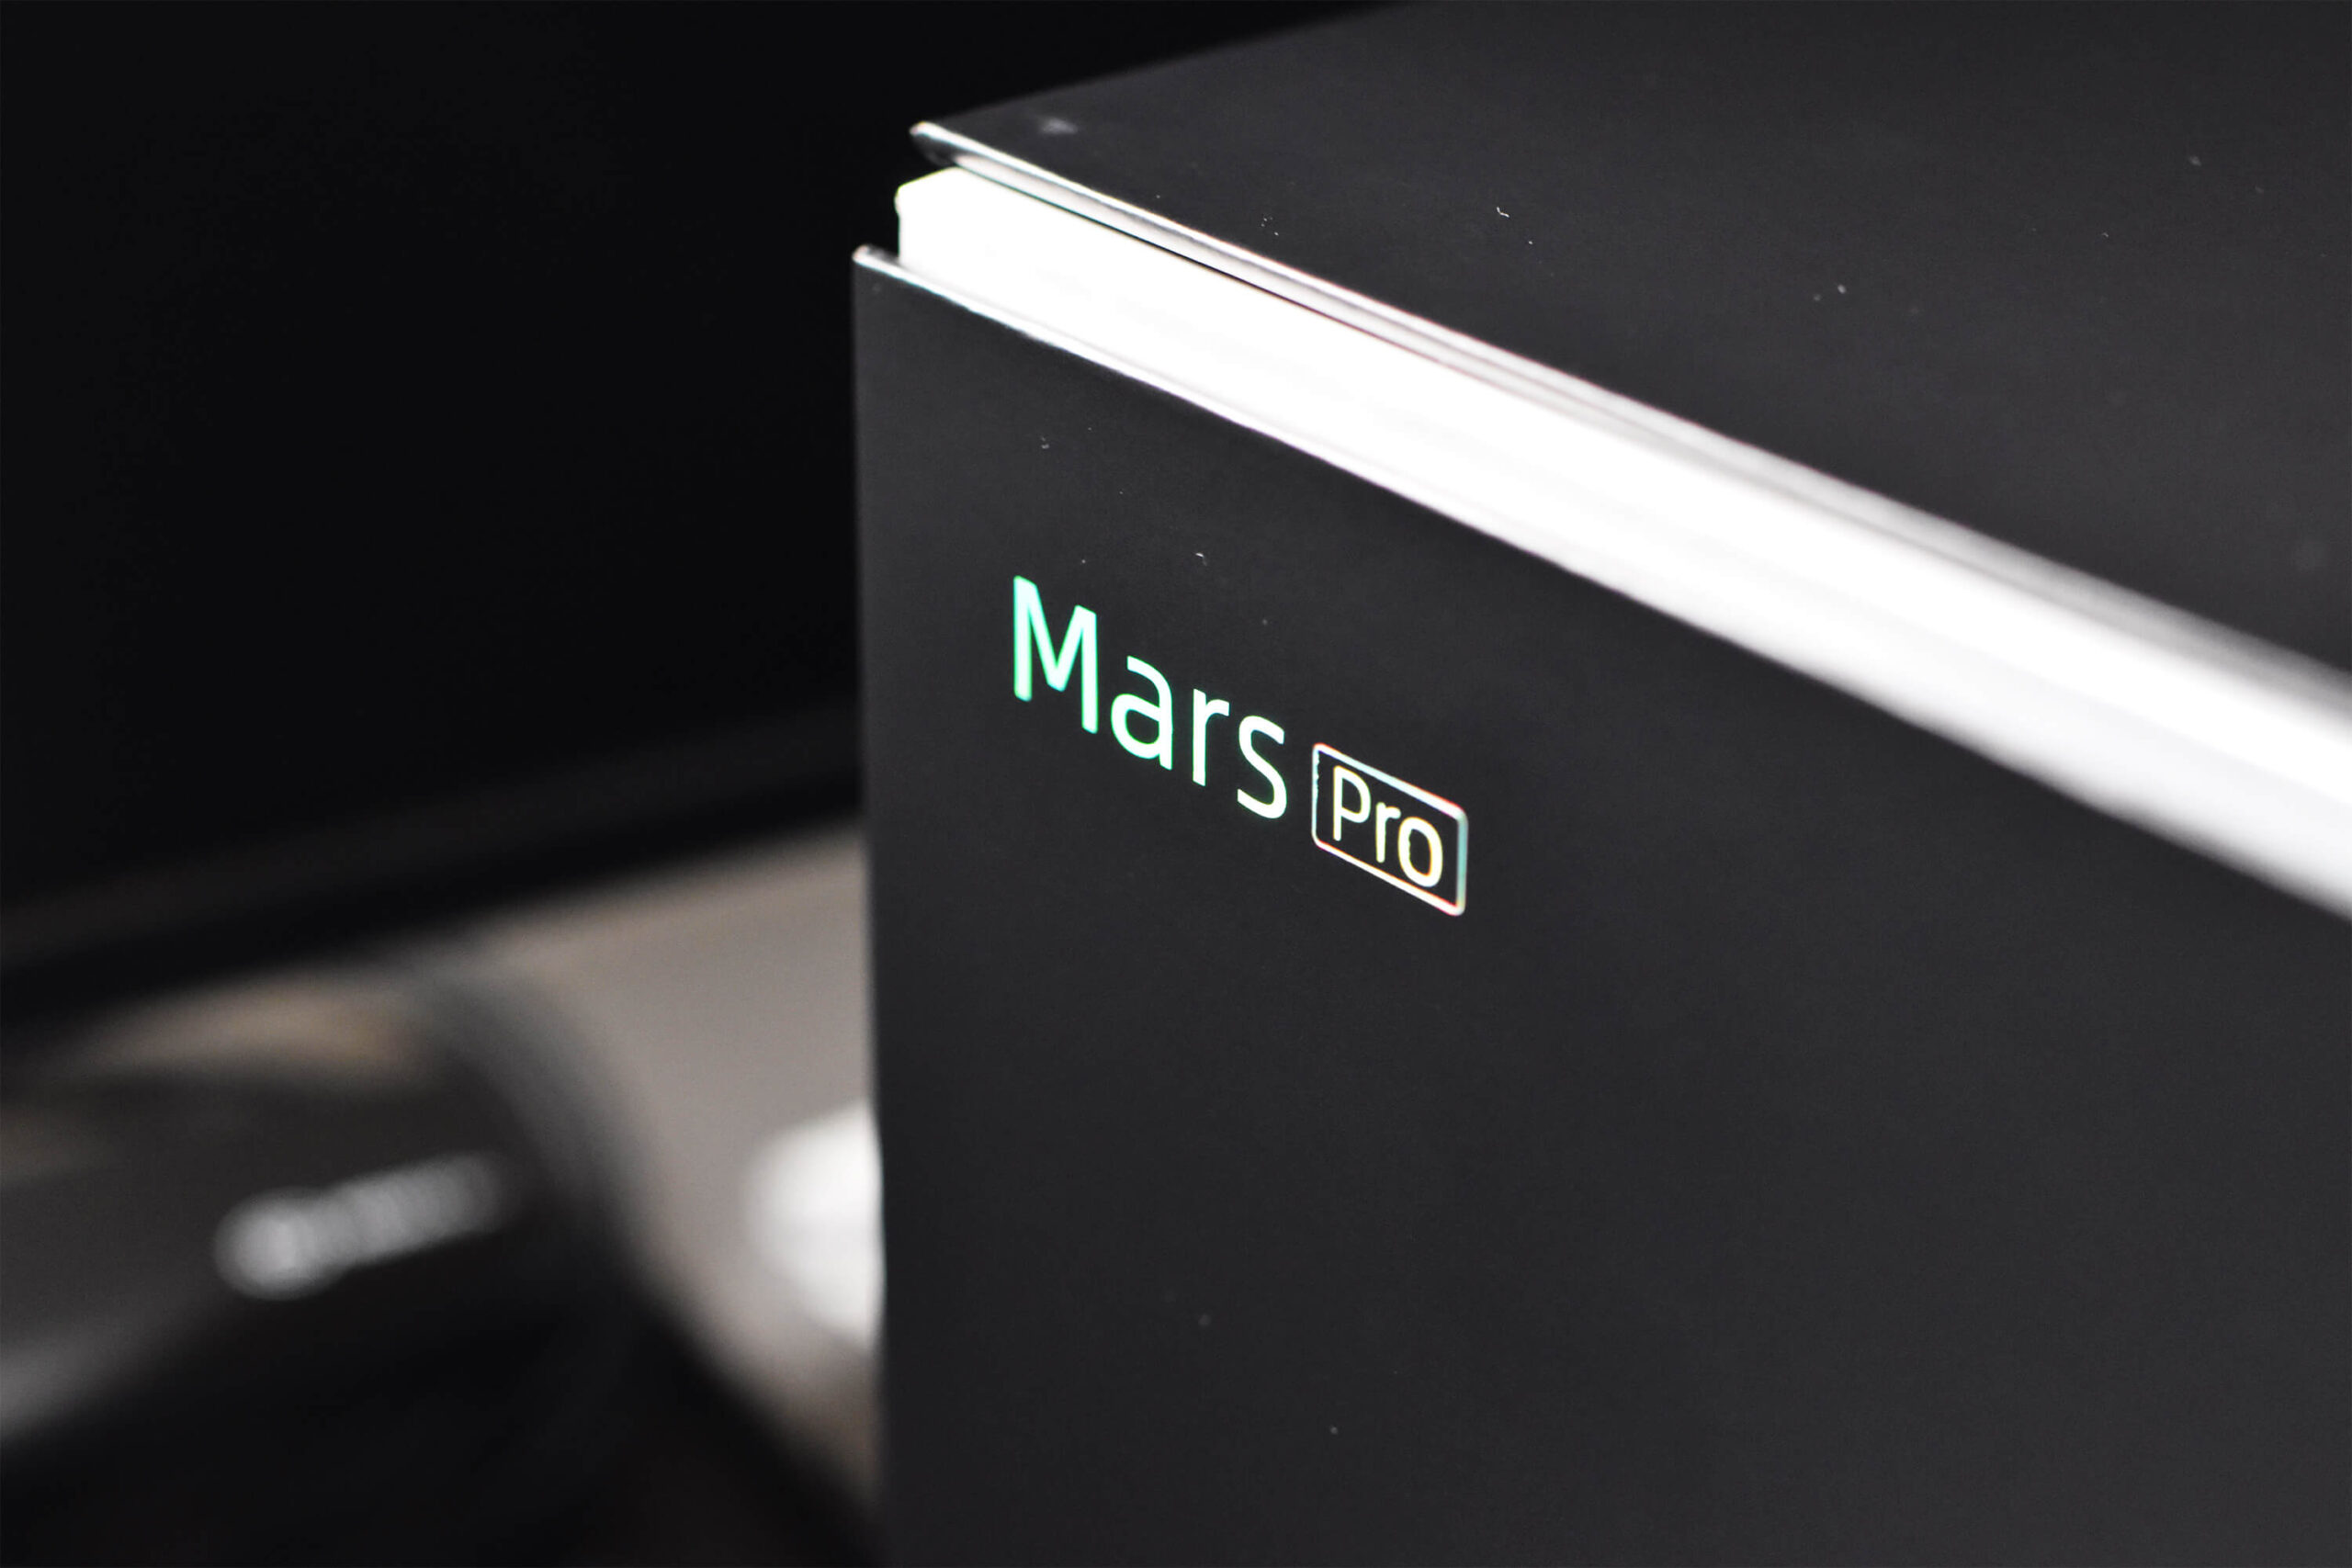 Mars Proのロゴはラメ加工